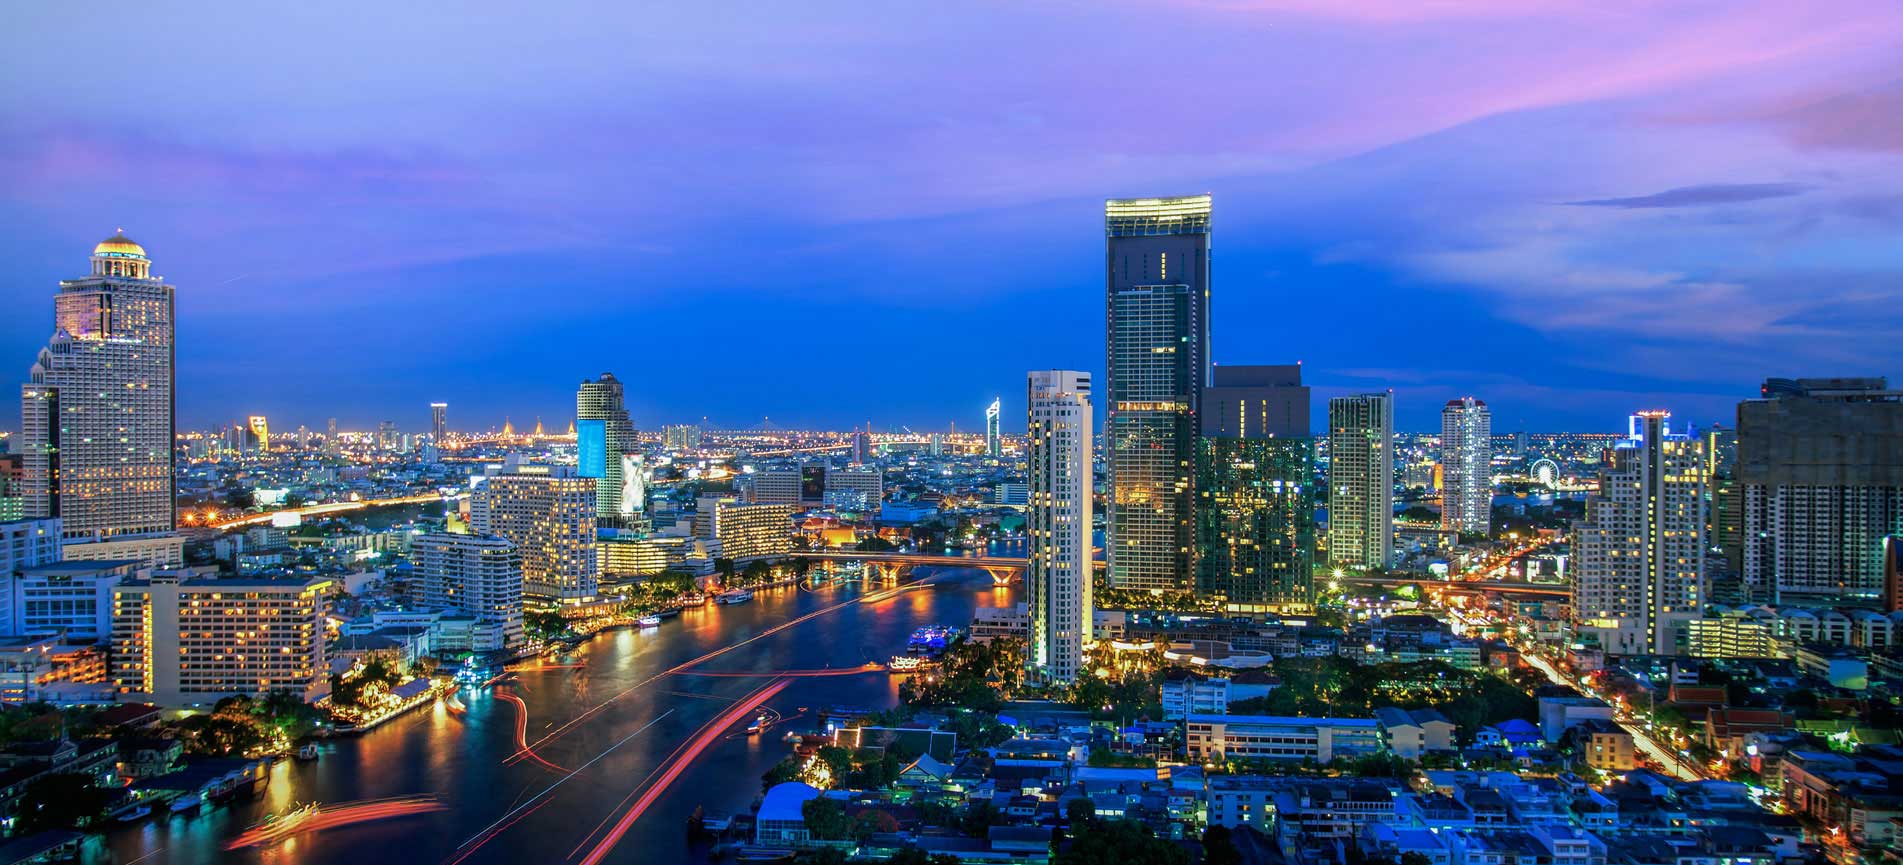 精明投資泰國房地產 投資泰國房地產一定要認識的泰國十大建商  開發商總整理 上 @東南亞投資報告